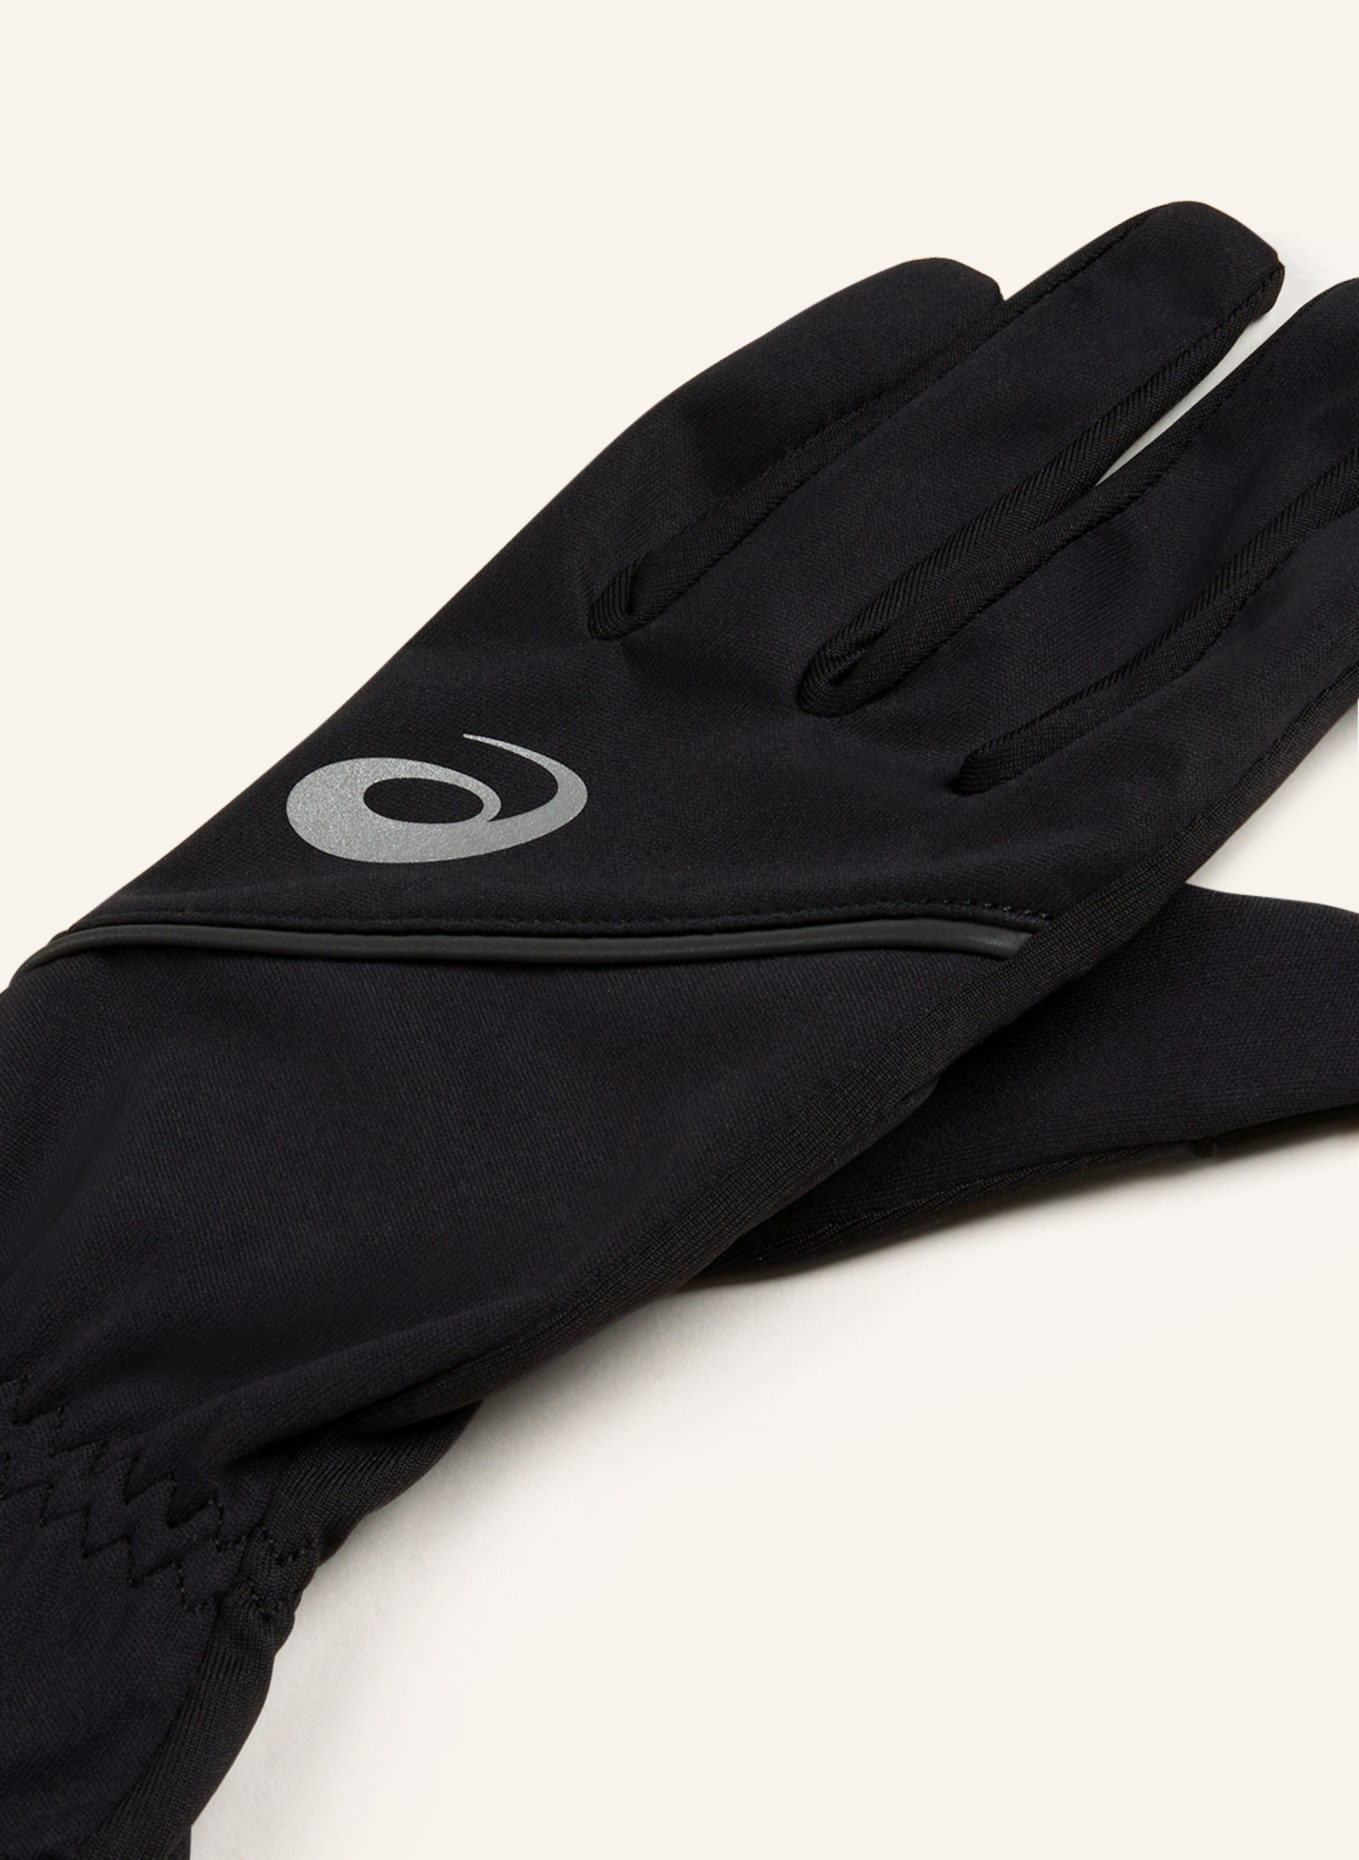 Multisport-Handschuhe ASICS schwarz in THERMAL Touchscreen-Funktion GLOVES mit